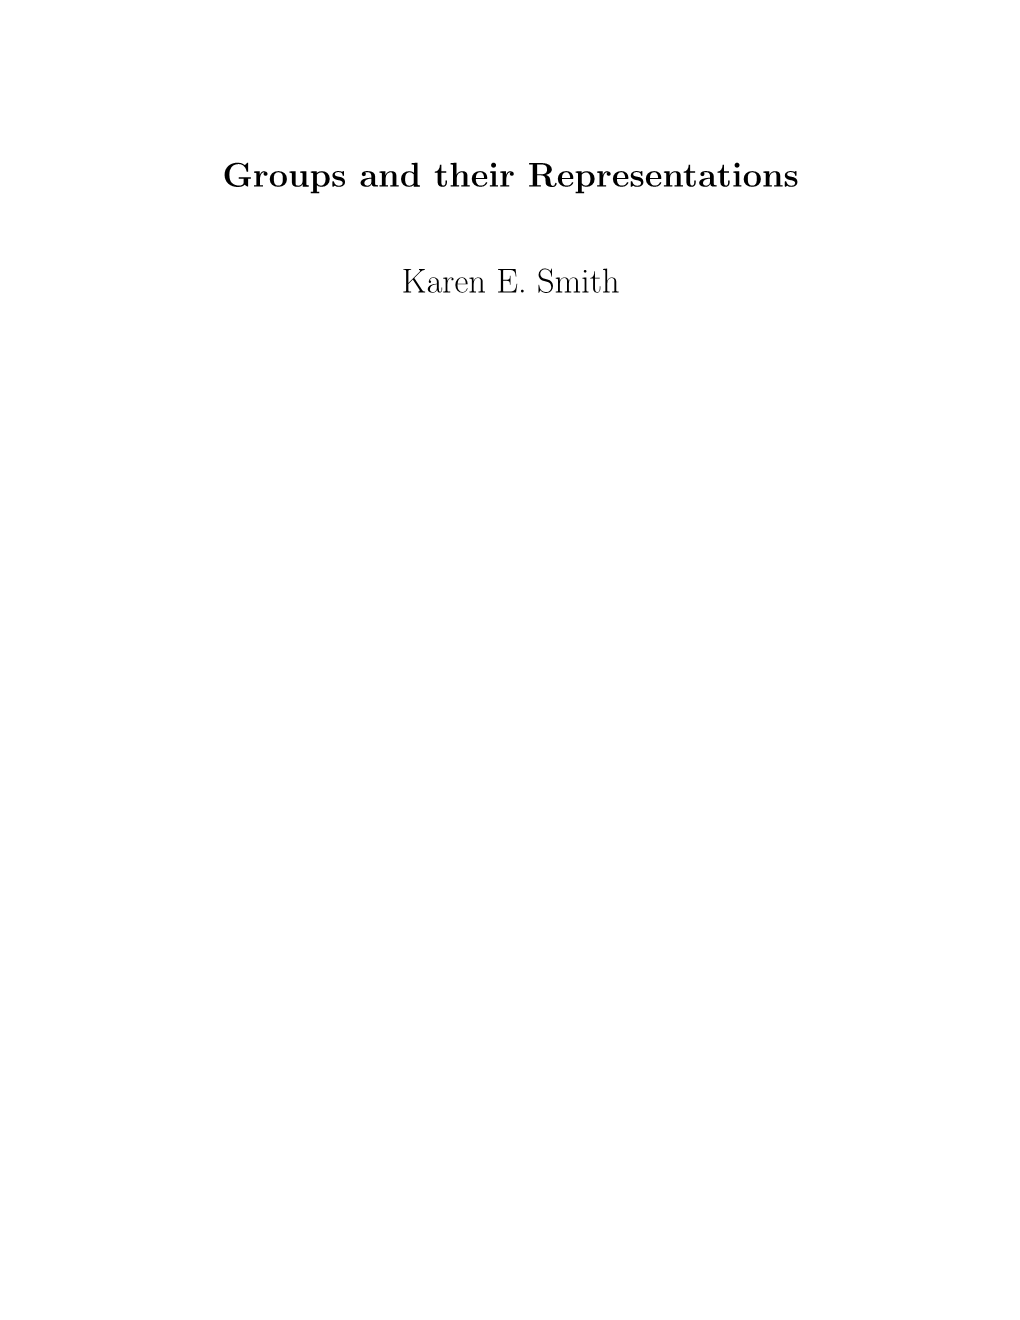 Groups and Their Representations Karen E. Smith